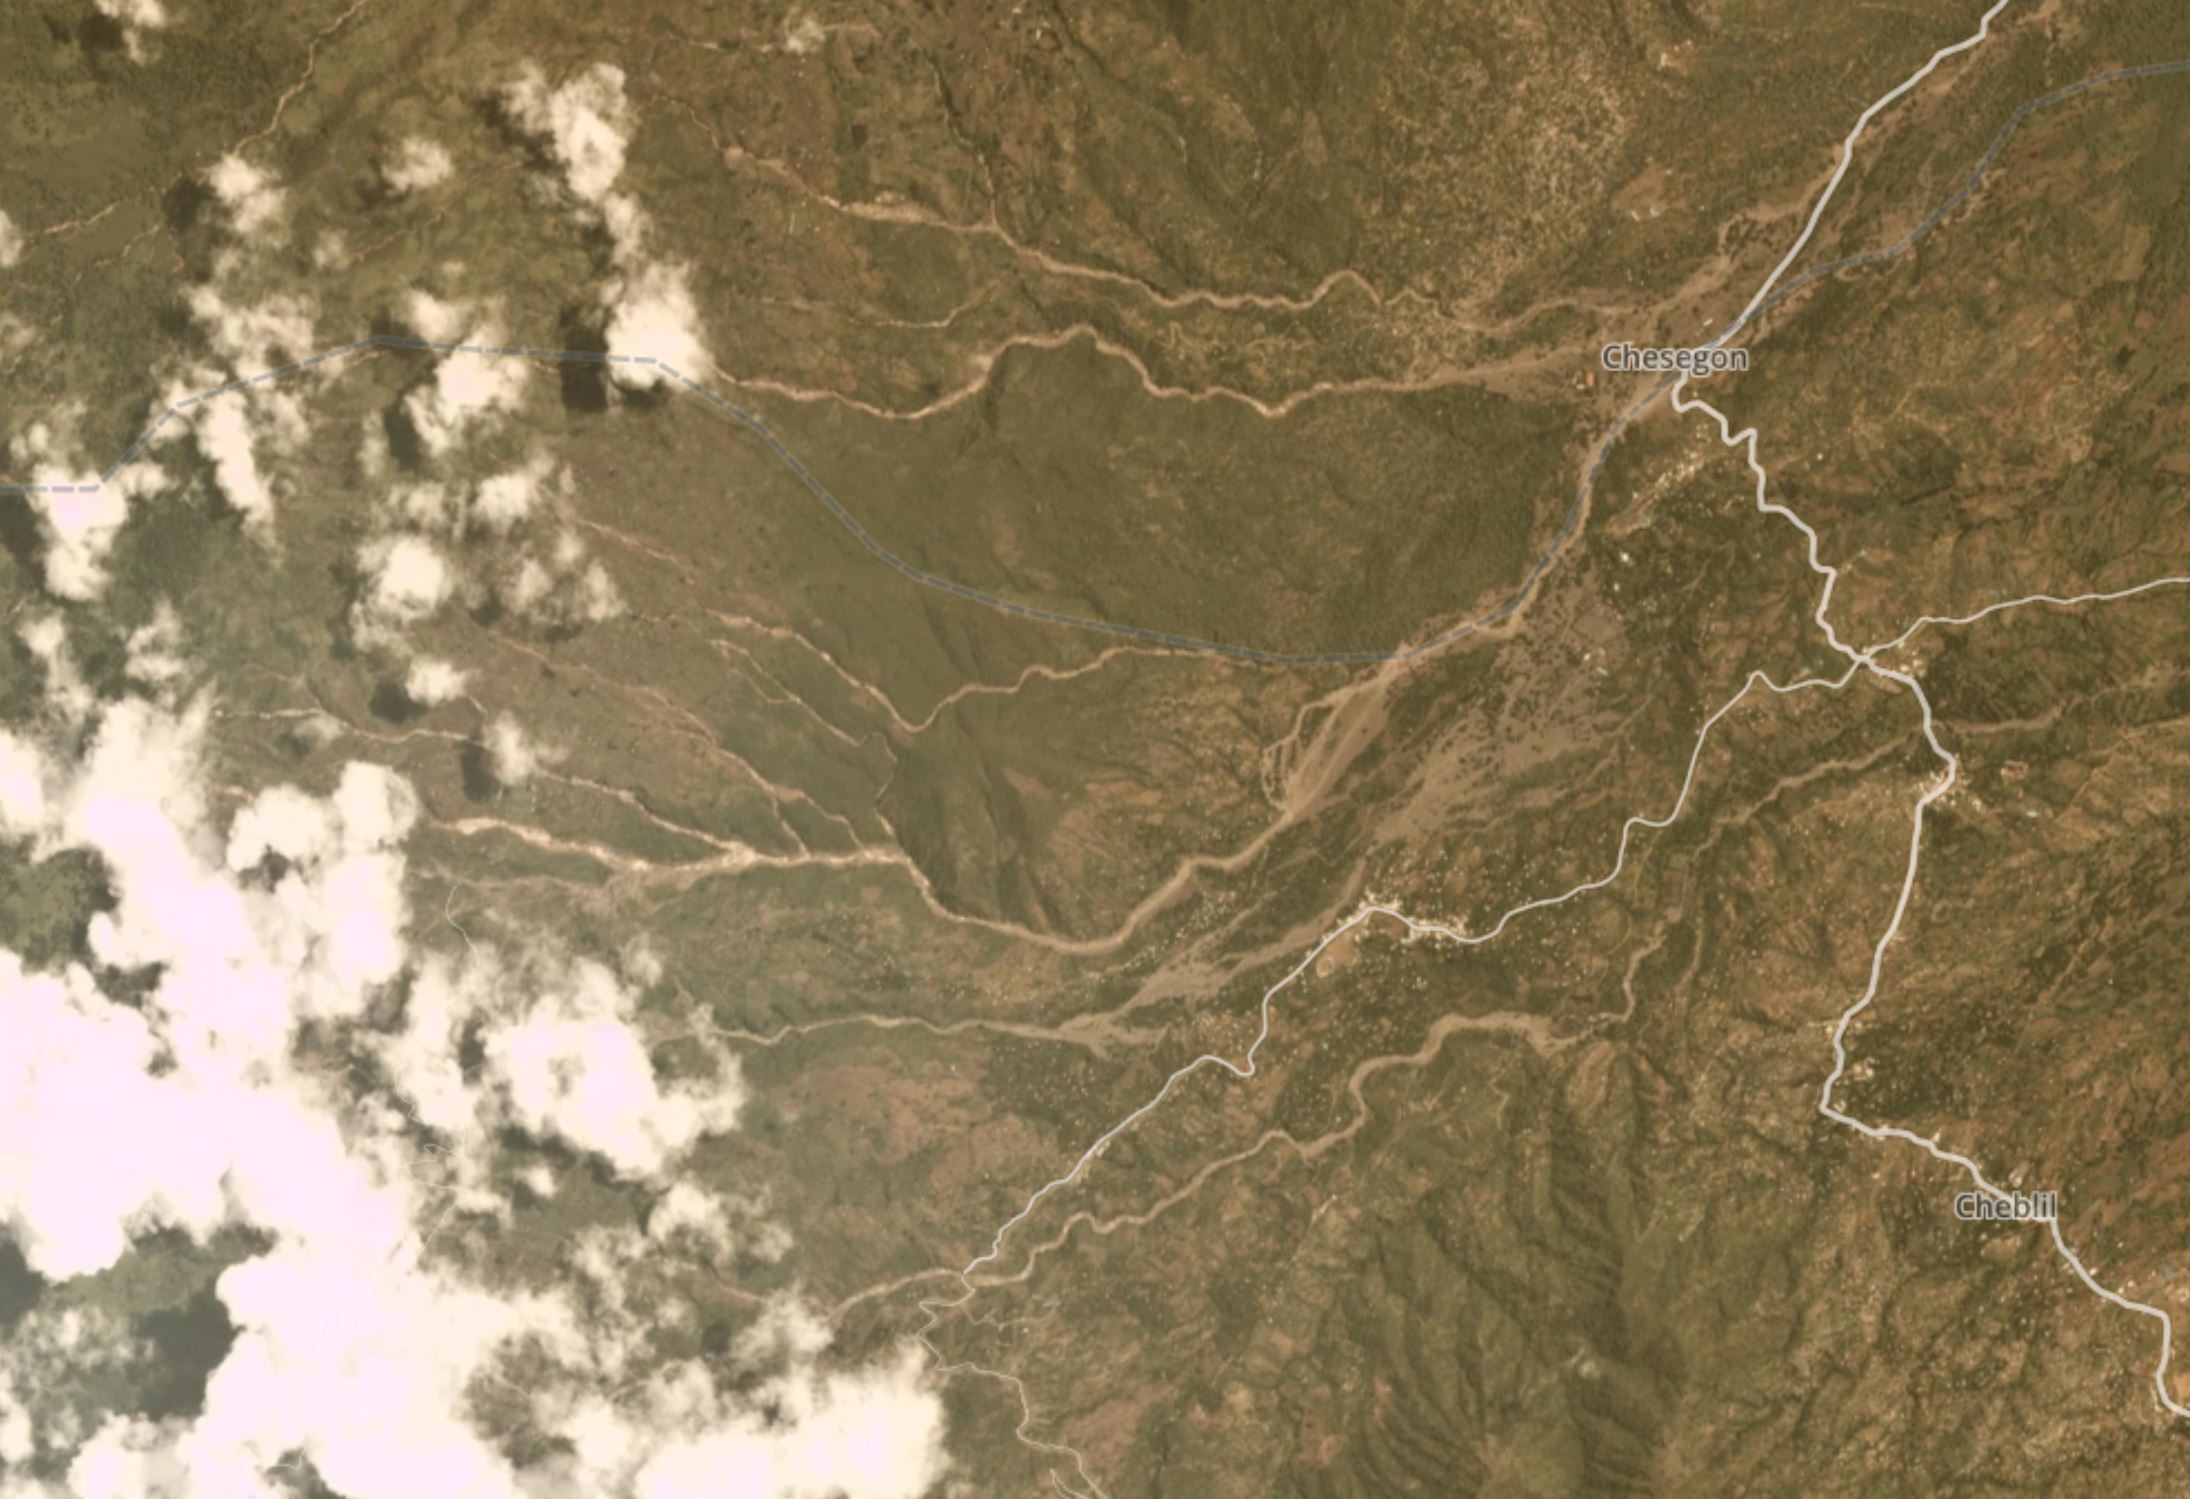 West Pokot landslides